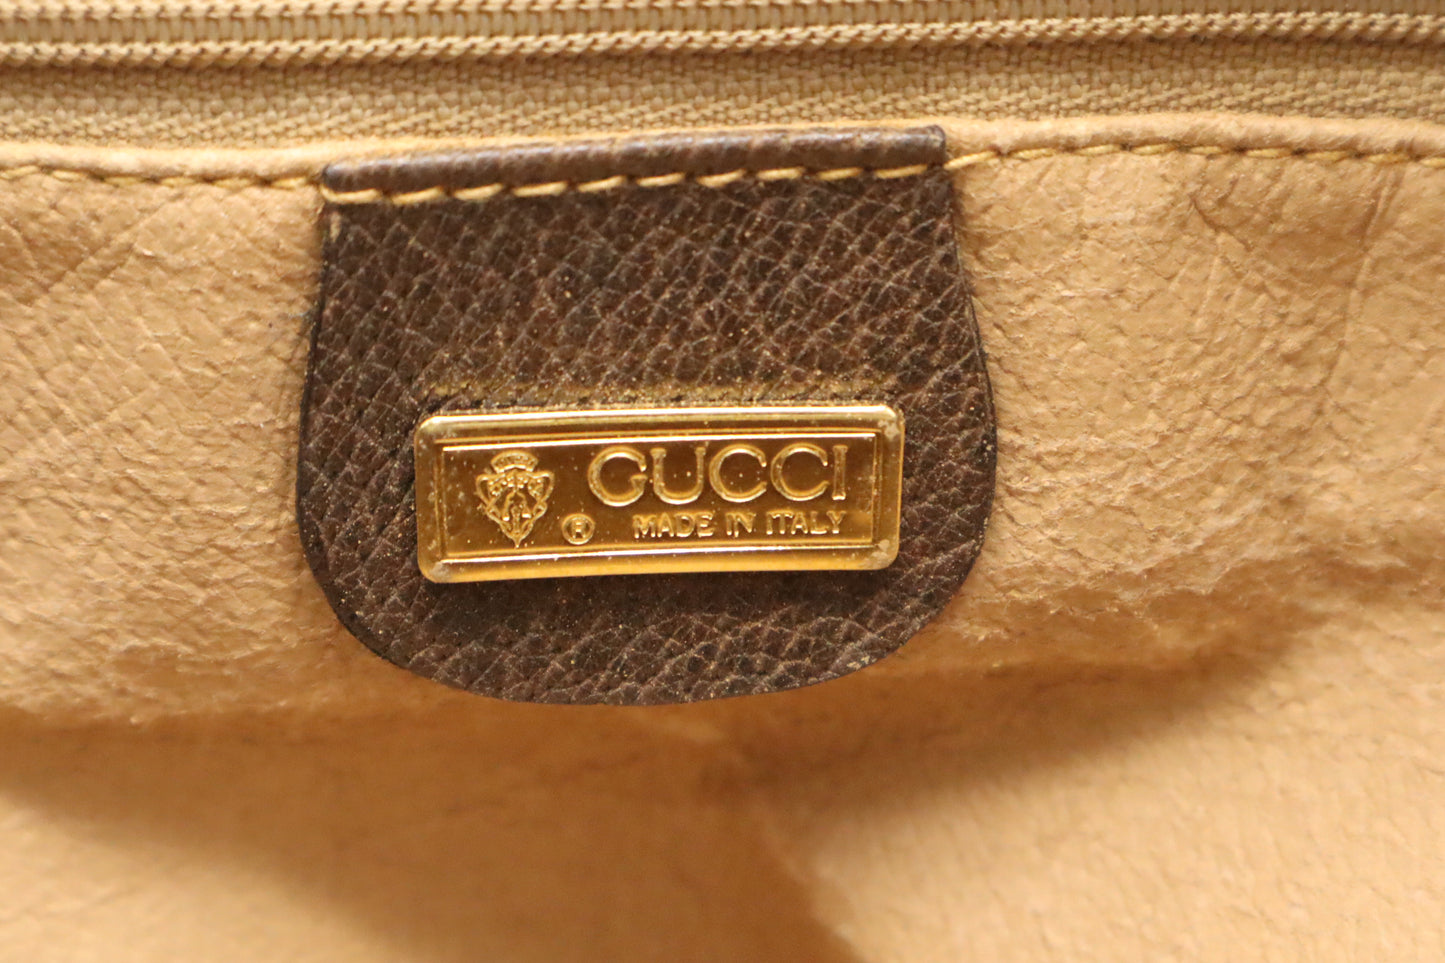 Gucci Boston Bag in GG Supreme Canvas